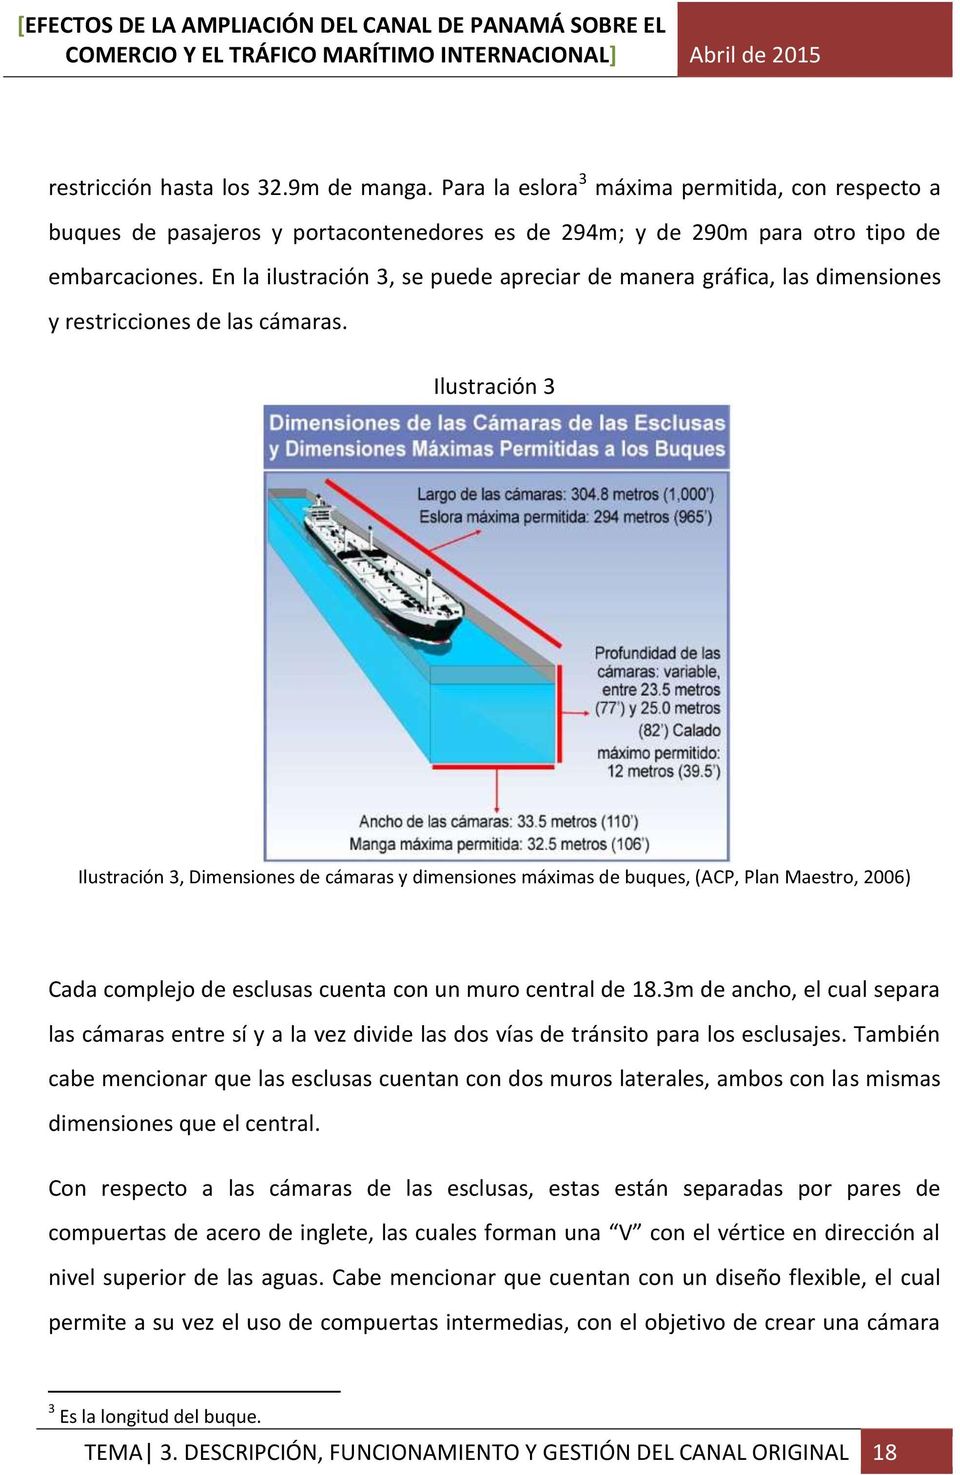 Ilustración 3 Ilustración 3, Dimensiones de cámaras y dimensiones máximas de buques, (ACP, Plan Maestro, 2006) Cada complejo de esclusas cuenta con un muro central de 18.